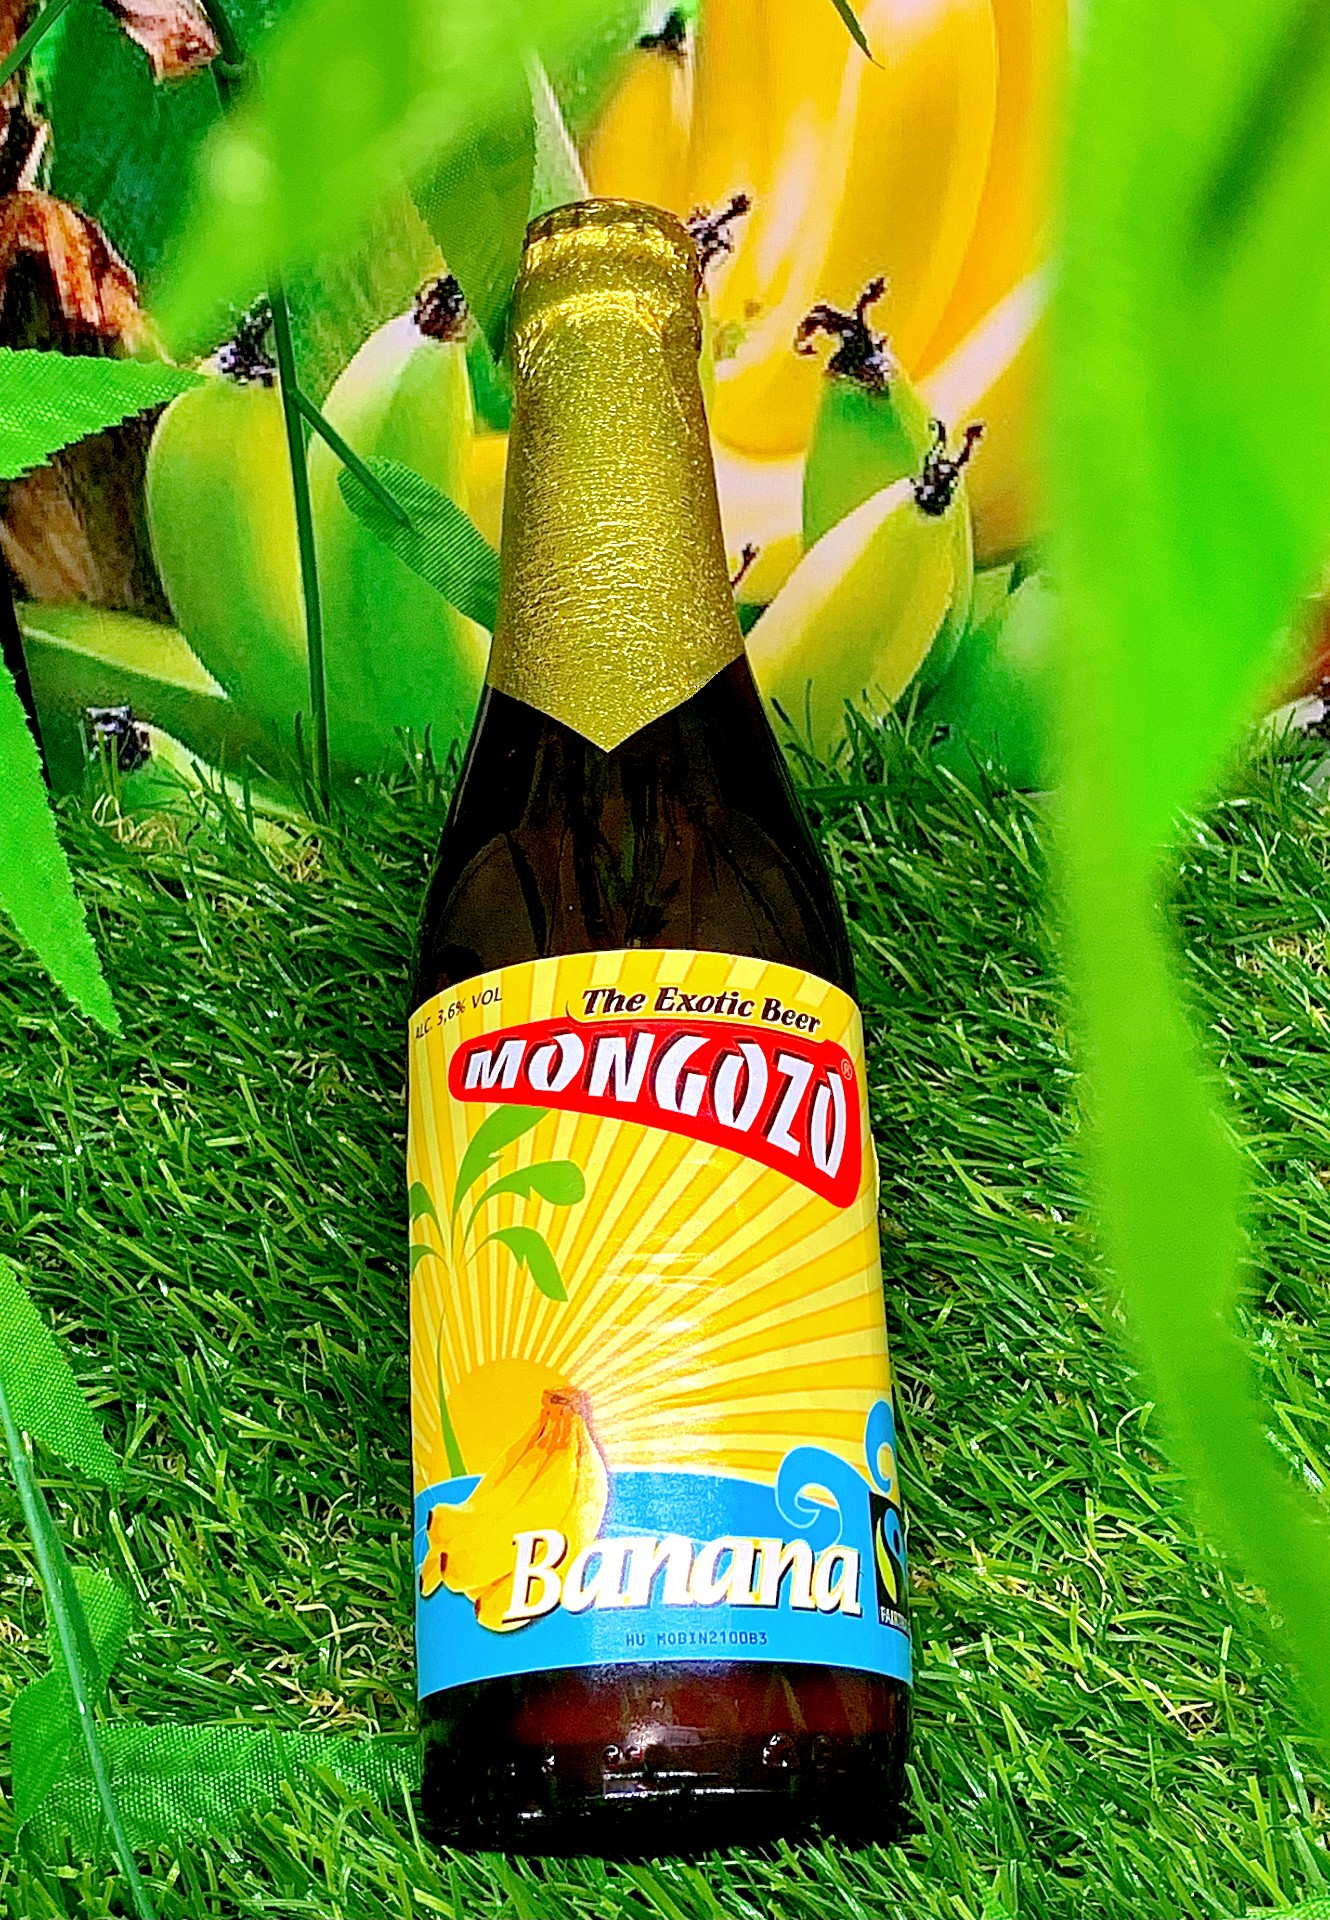 La bière mongozo à la banane